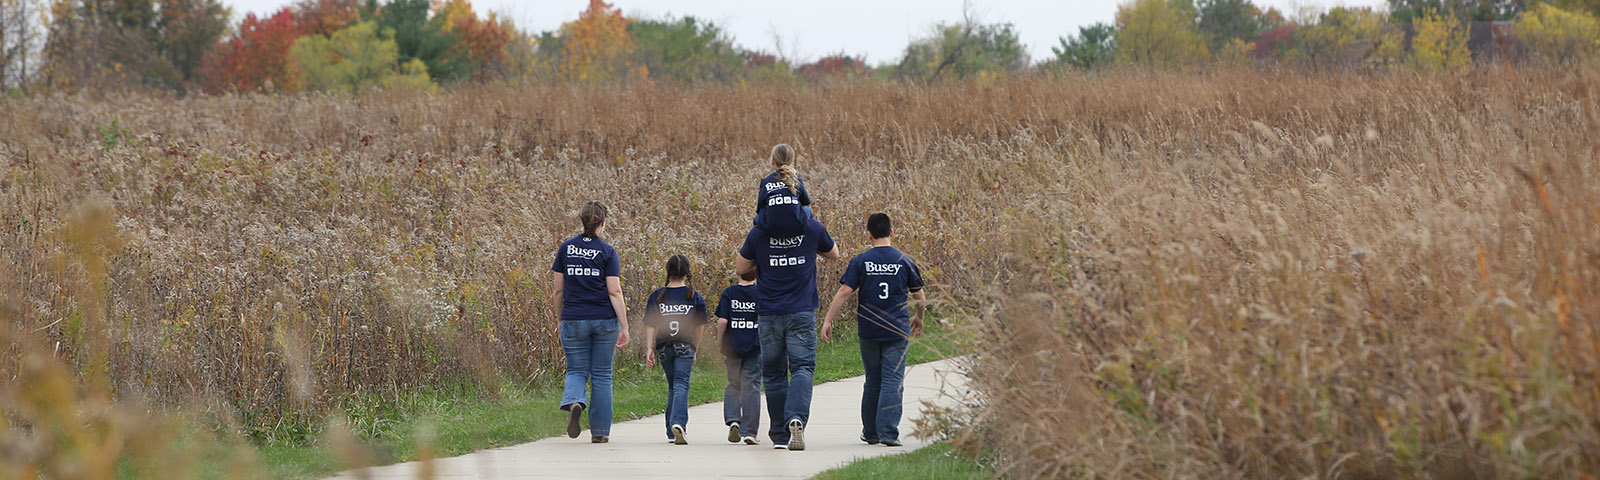 Volunteer family walking in a field.